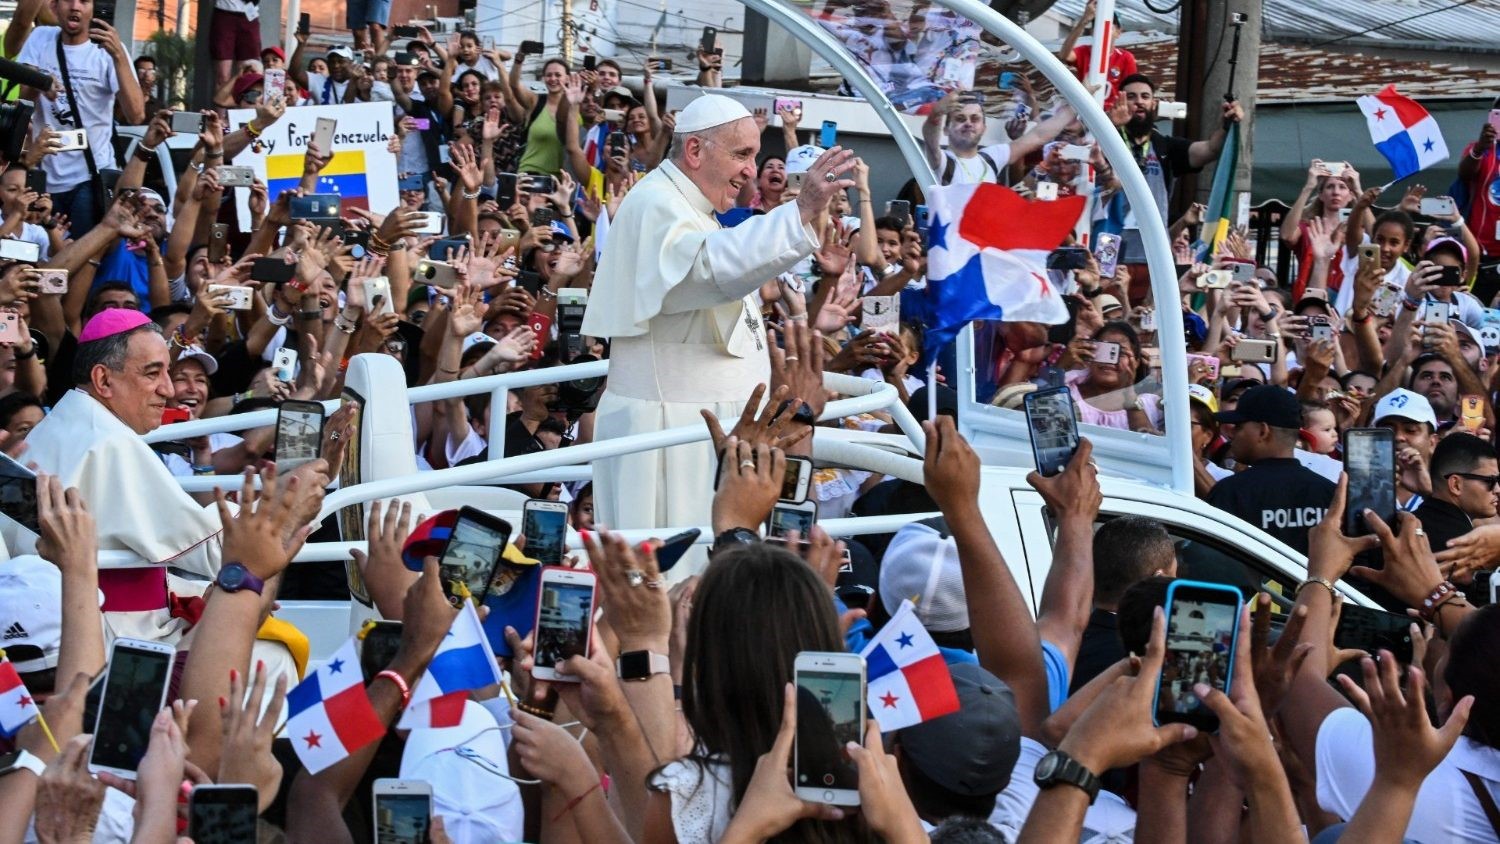 Giới trẻ nói: “Với giáo hoàng này, Giáo hội trở nên trẻ trung hơn”